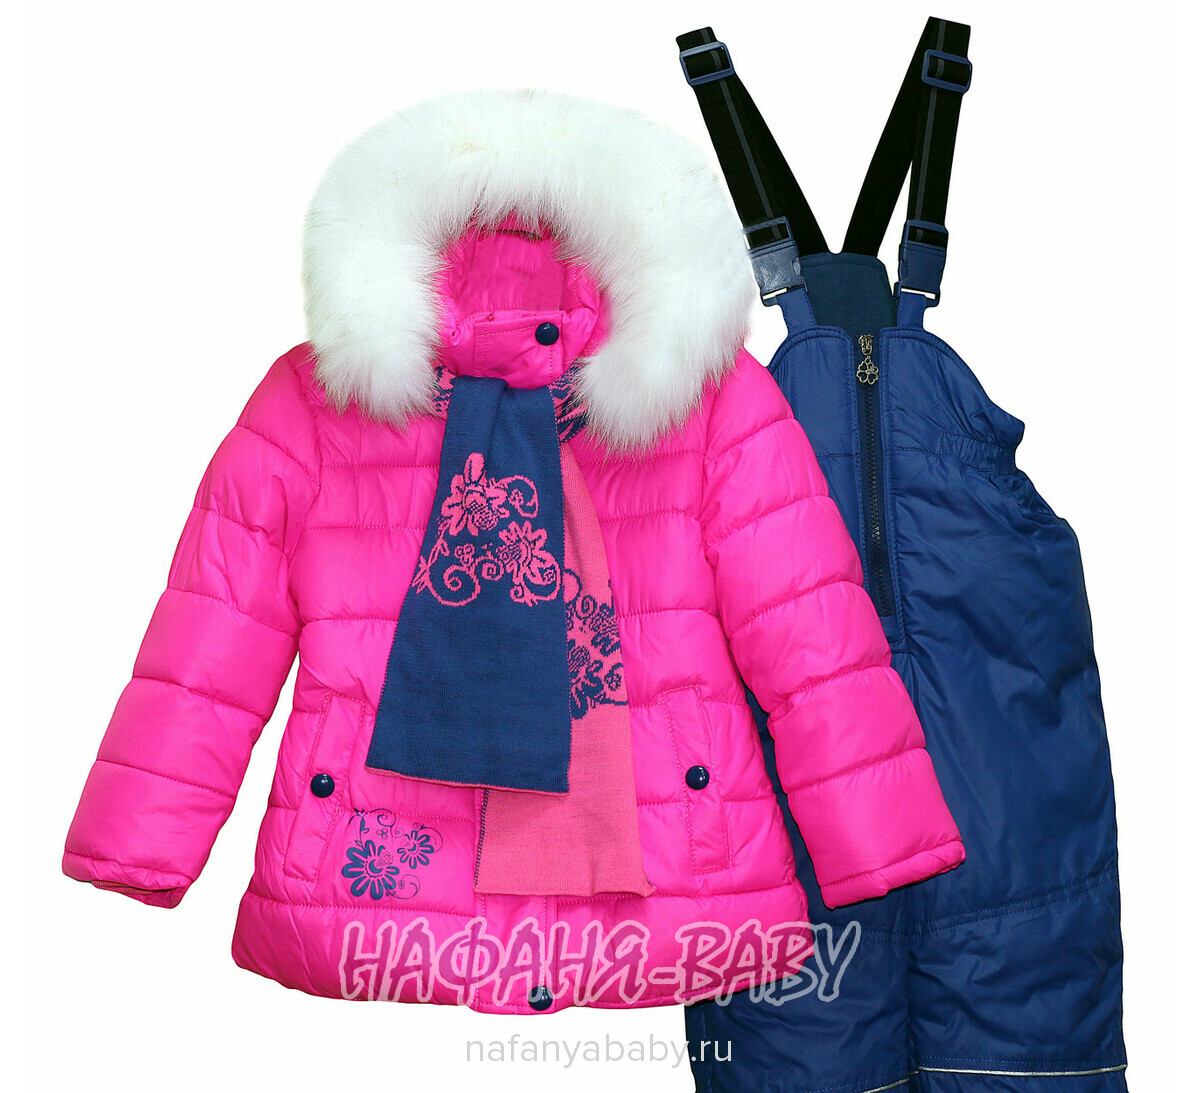 Зимний костюм (куртка+полукомбинезон+шарфик) DANPING арт: 6608, 1-4 года, цвет ярко-розовый, оптом Китай (Пекин)